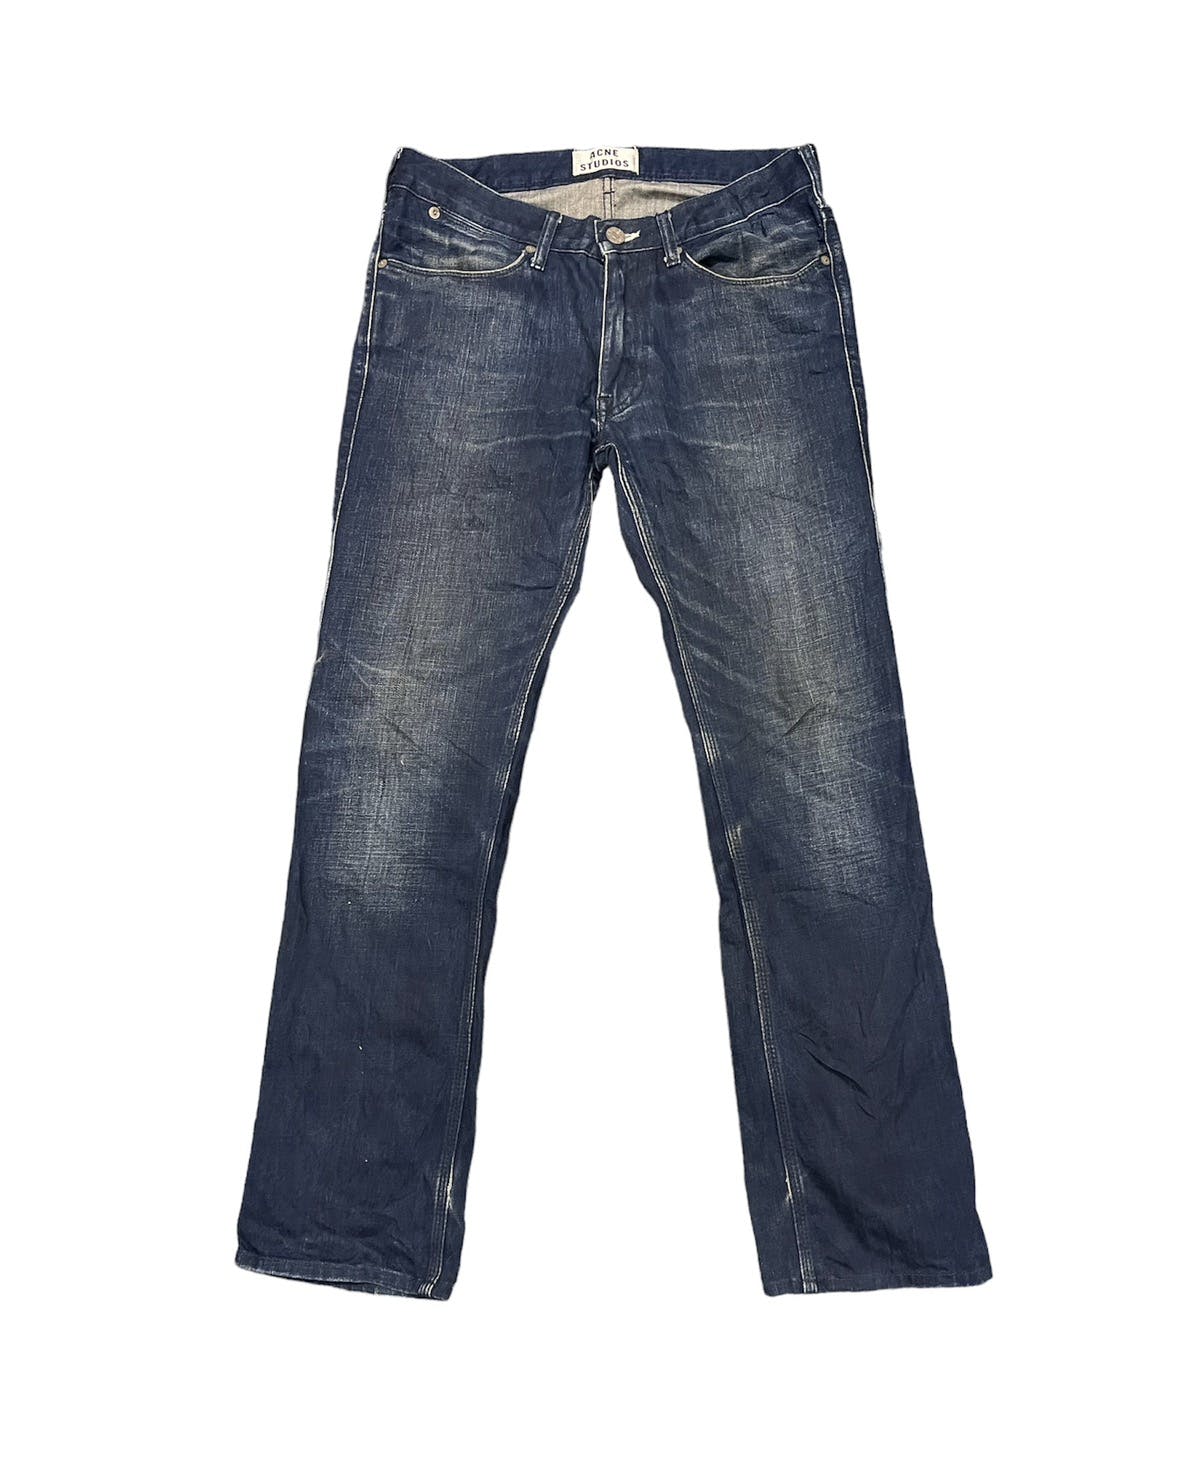 Acne studio jeans - 1